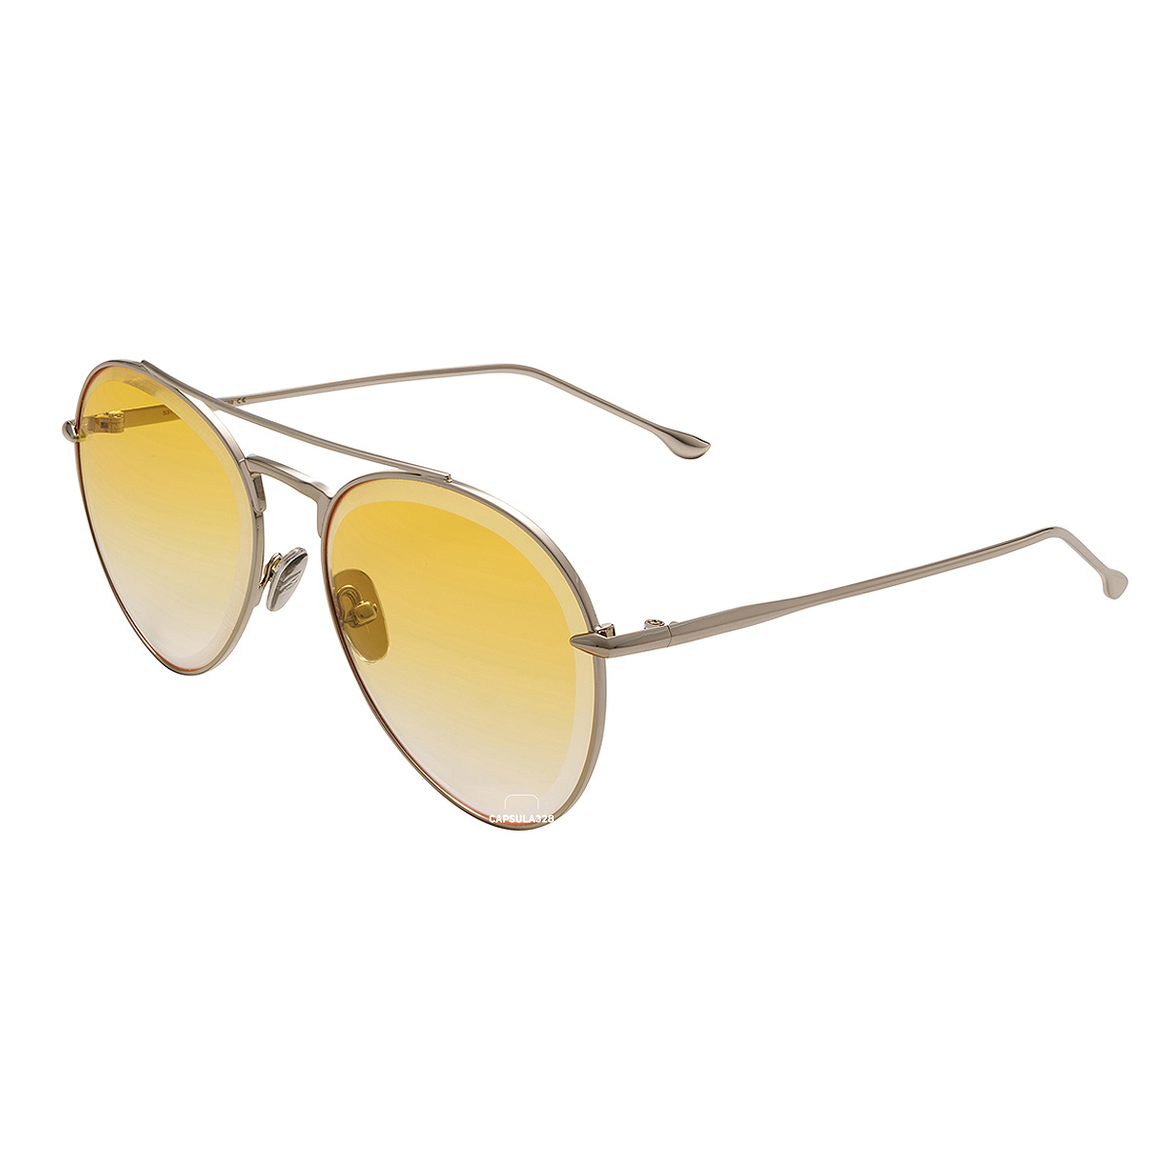 Сонцезахисні окуляри Aviator 7801